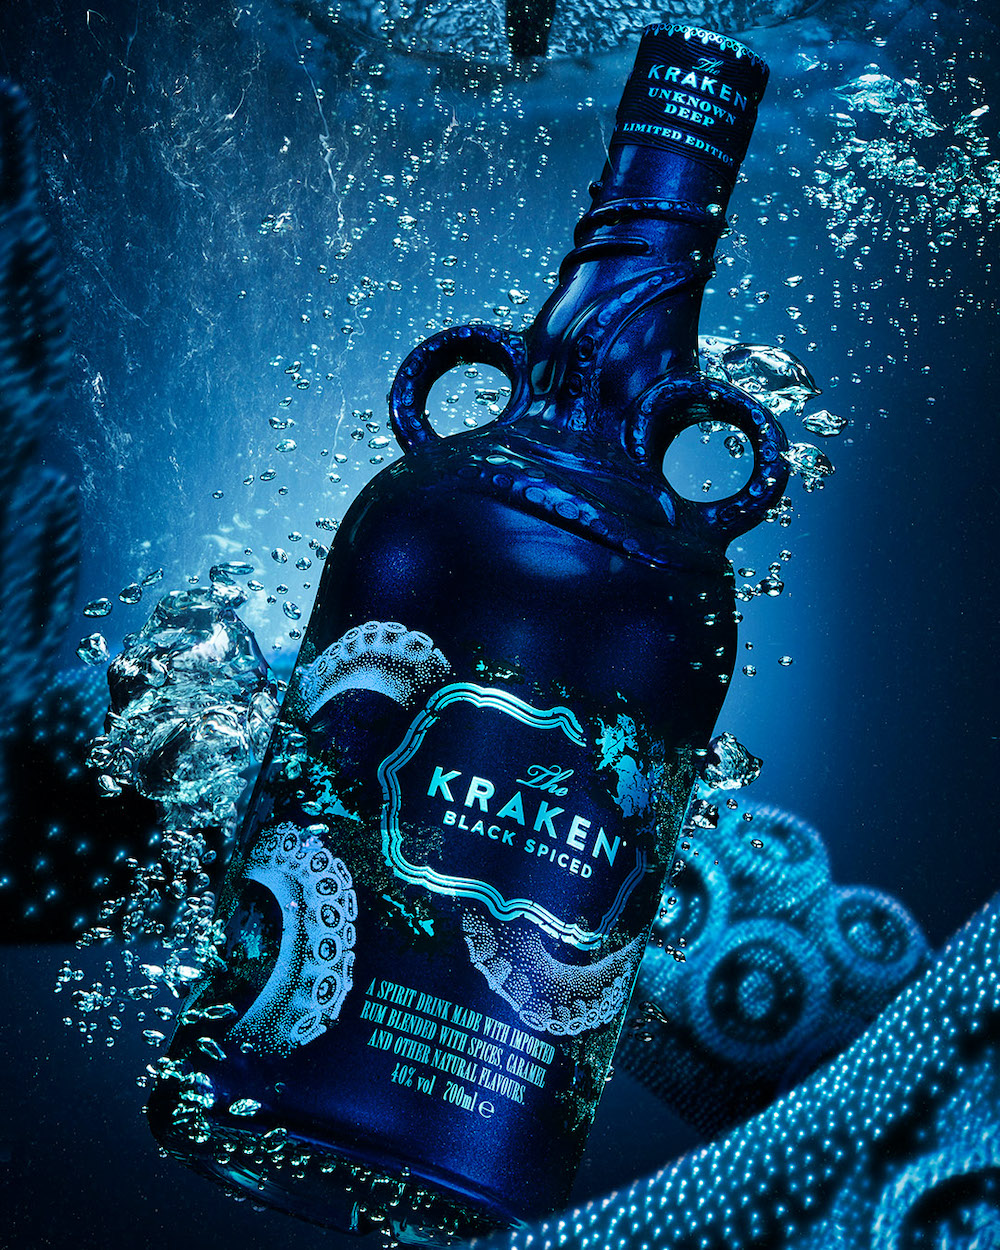 imagen 3 de Imposible perder de vista la nueva botella de The Kraken.